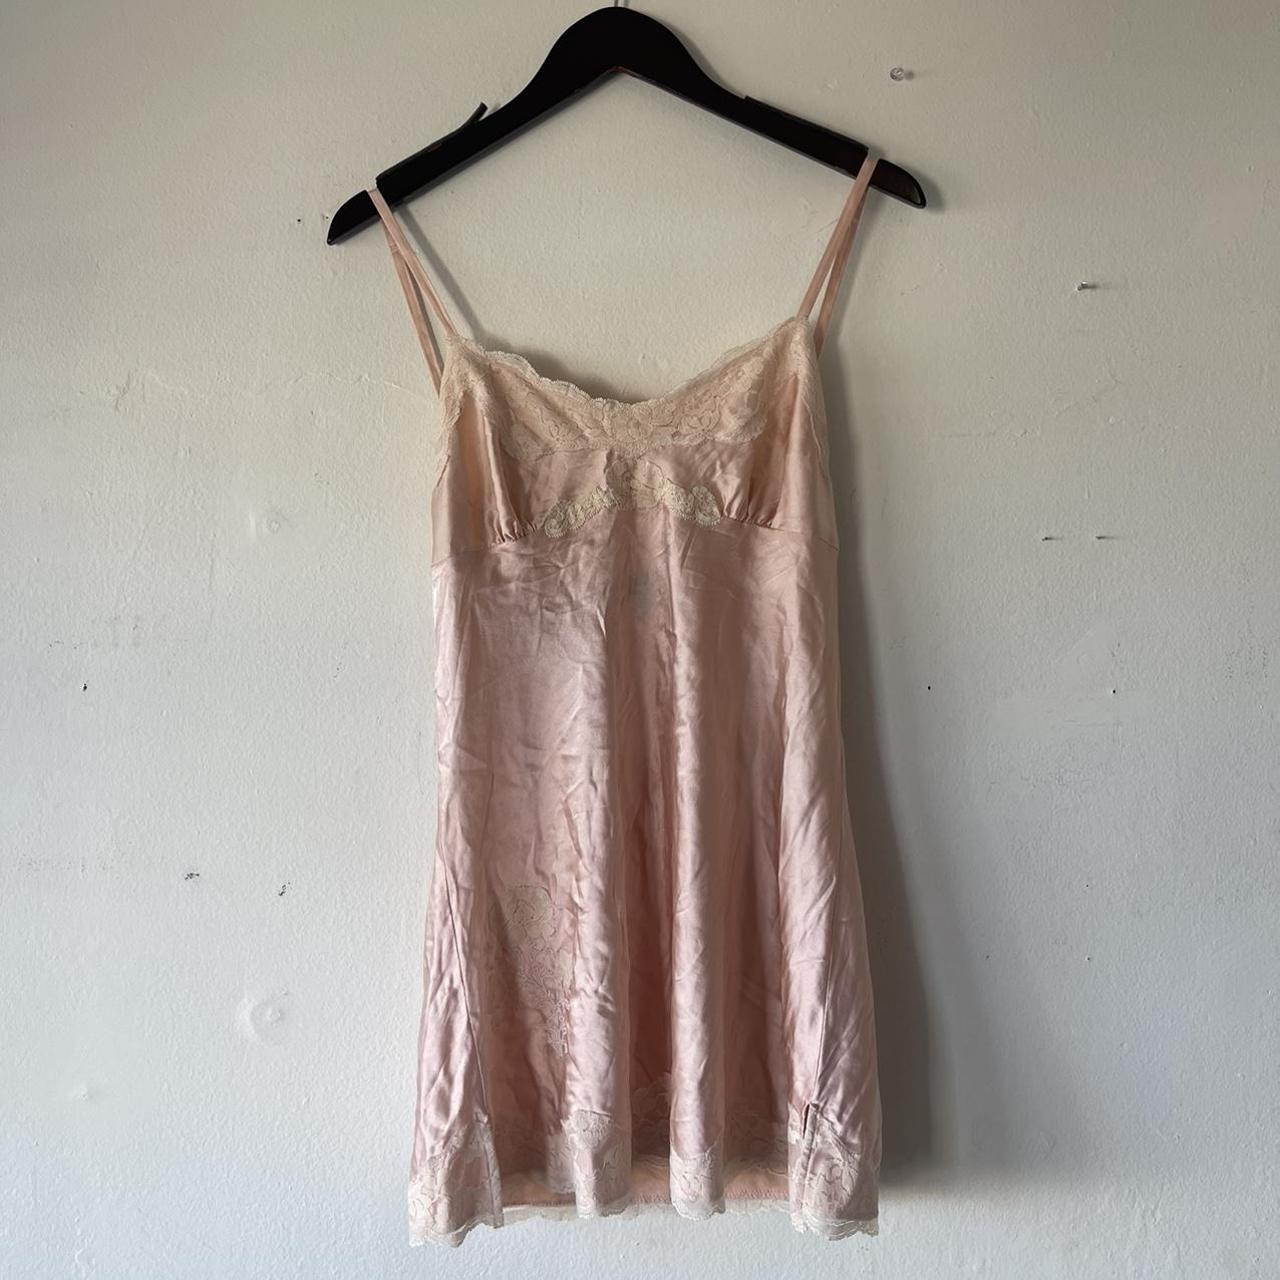 Vintage silk slip dress Lace detailing Could also... - Depop